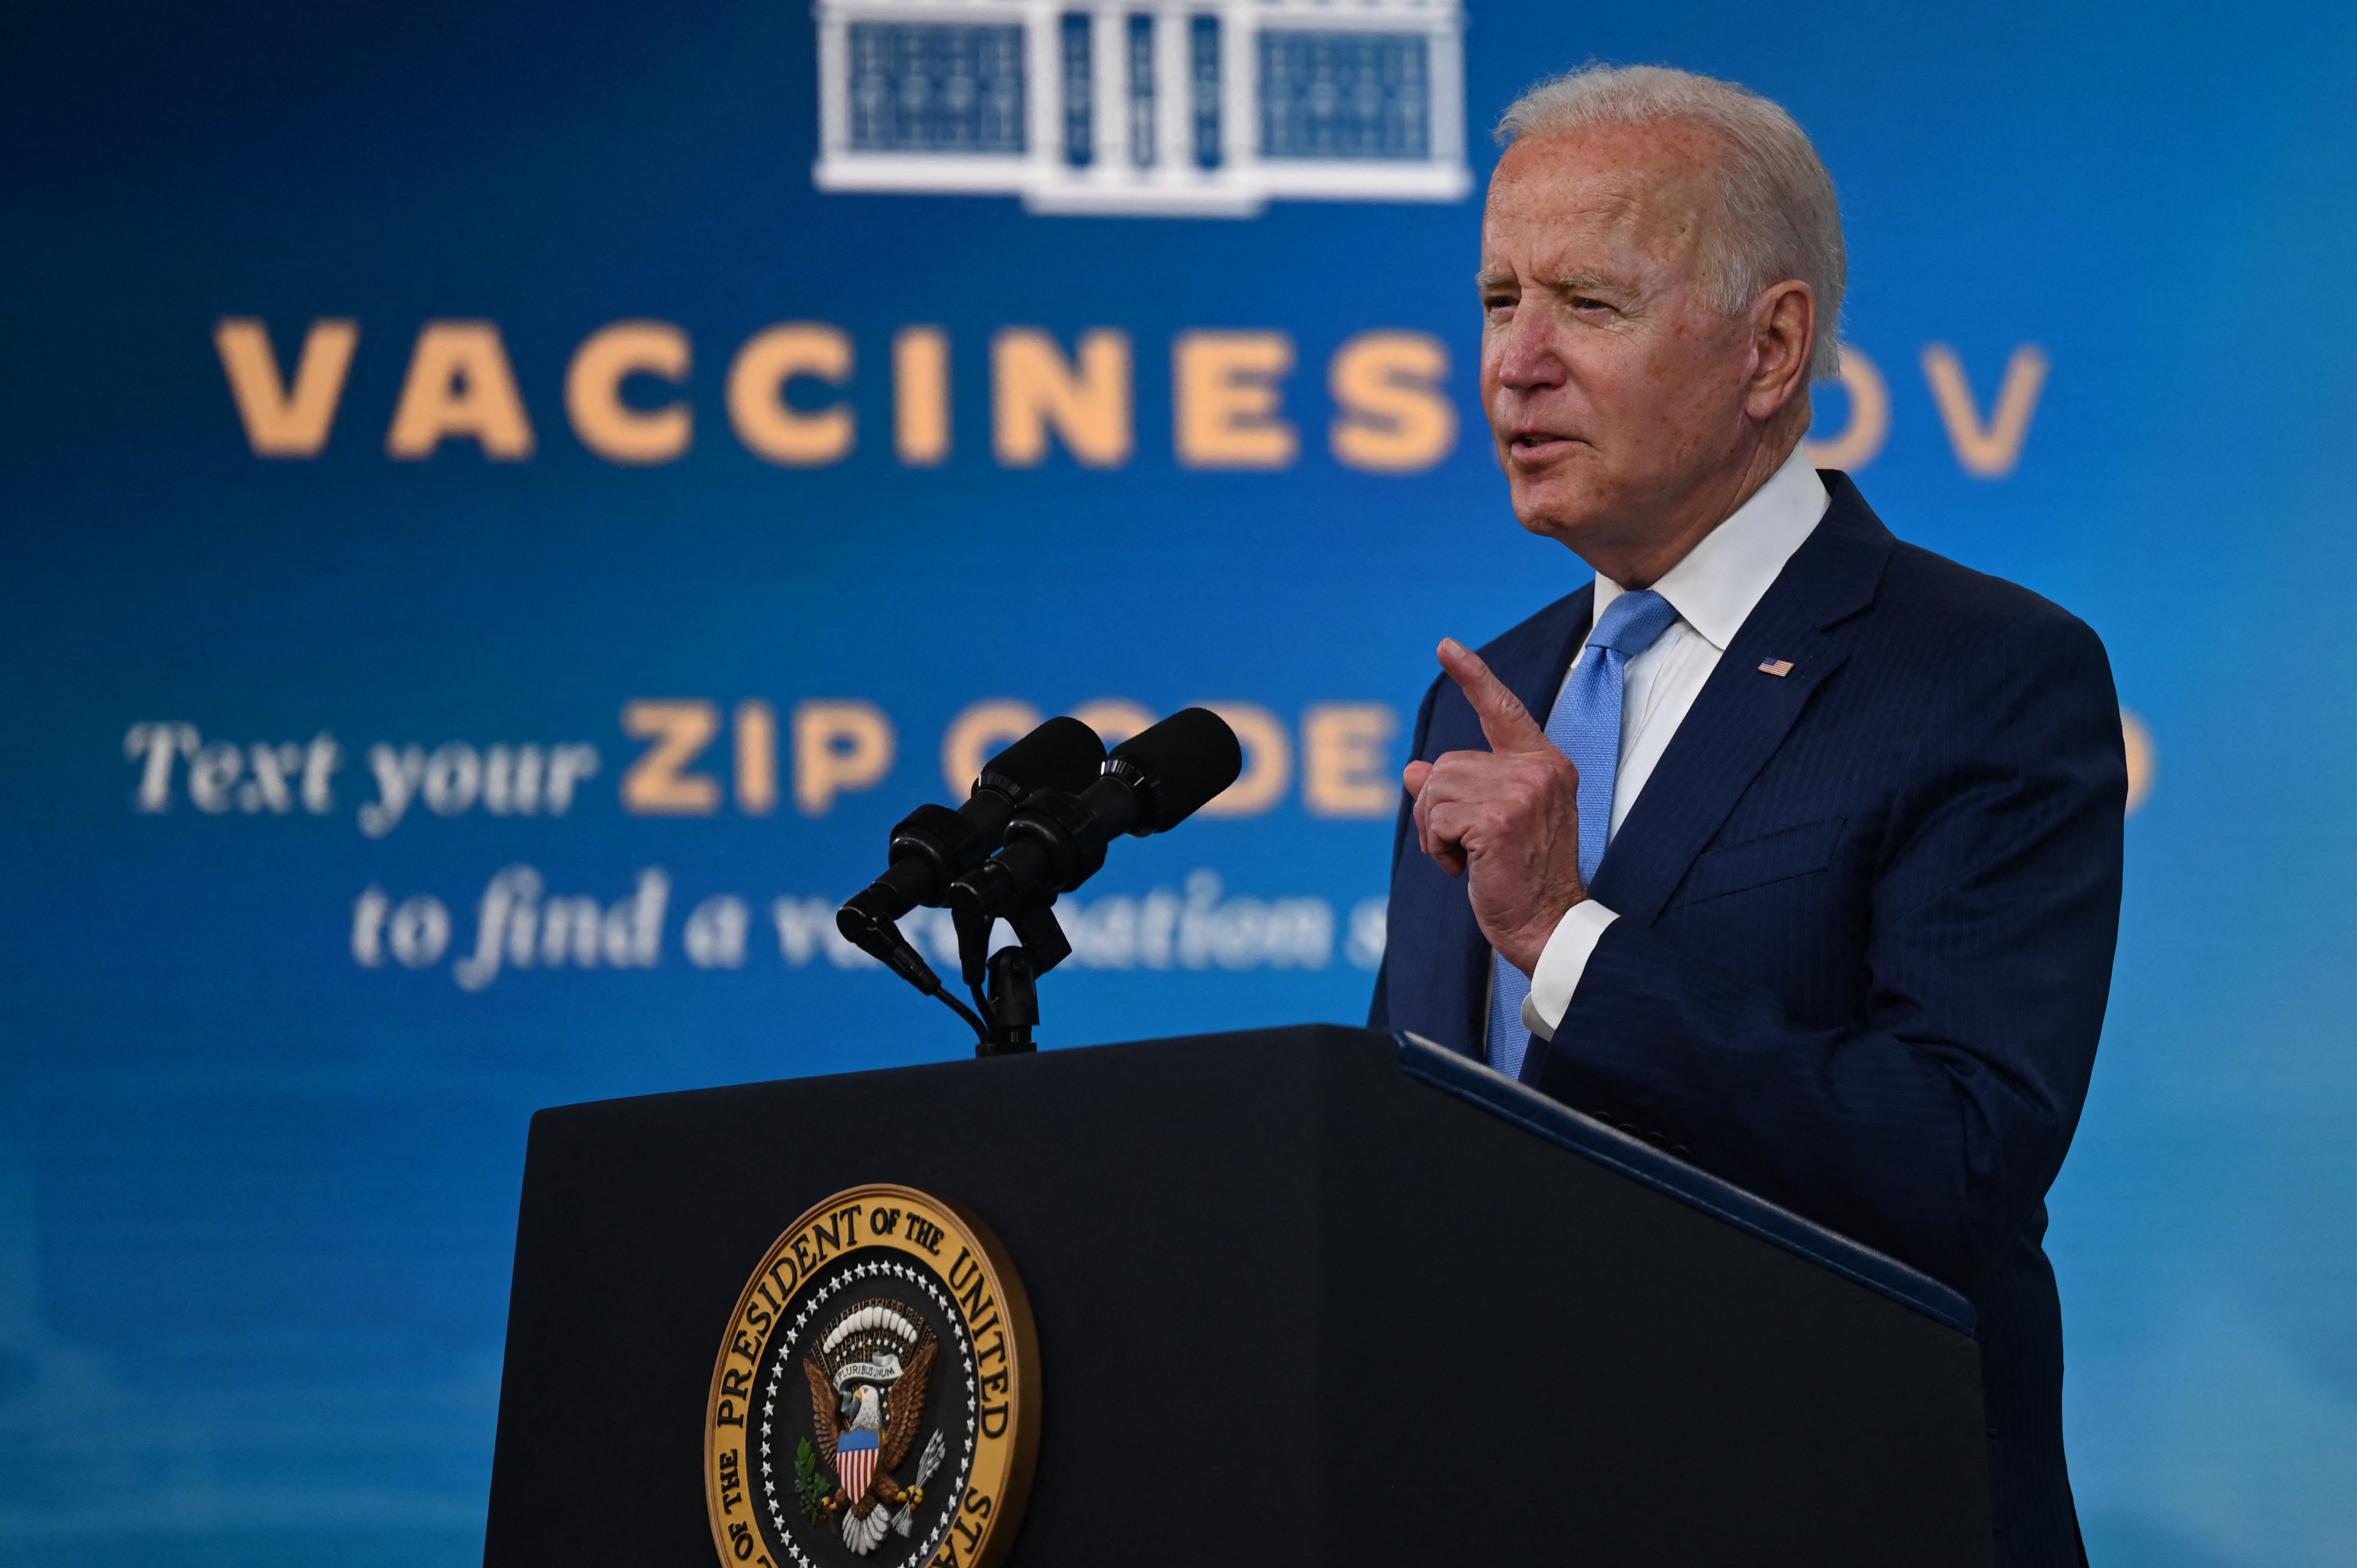 Biden discusses vaccines